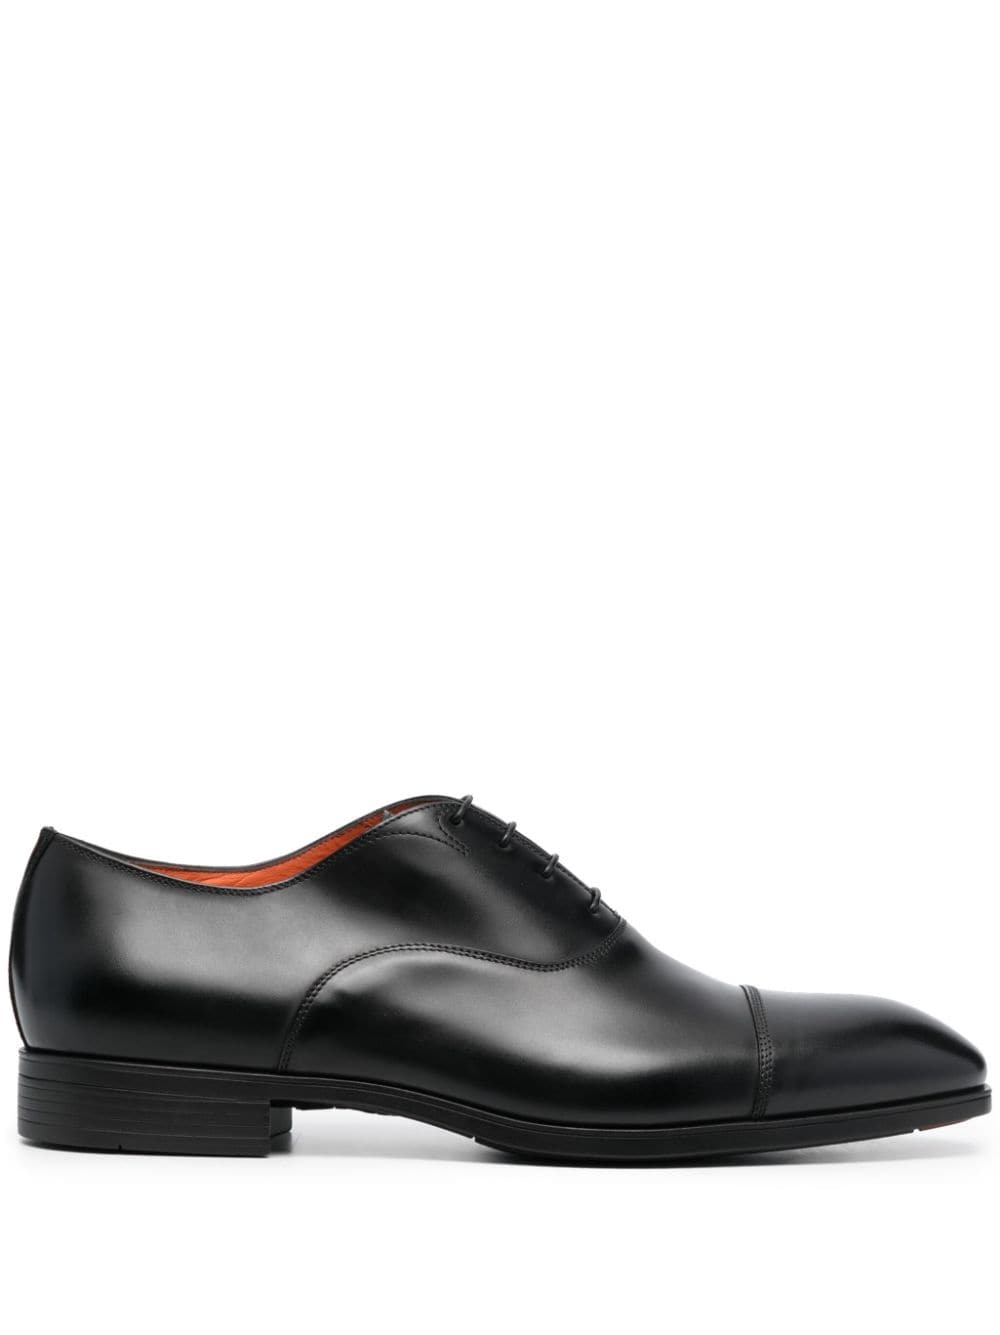 Santoni leather Oxford shoes - Black von Santoni